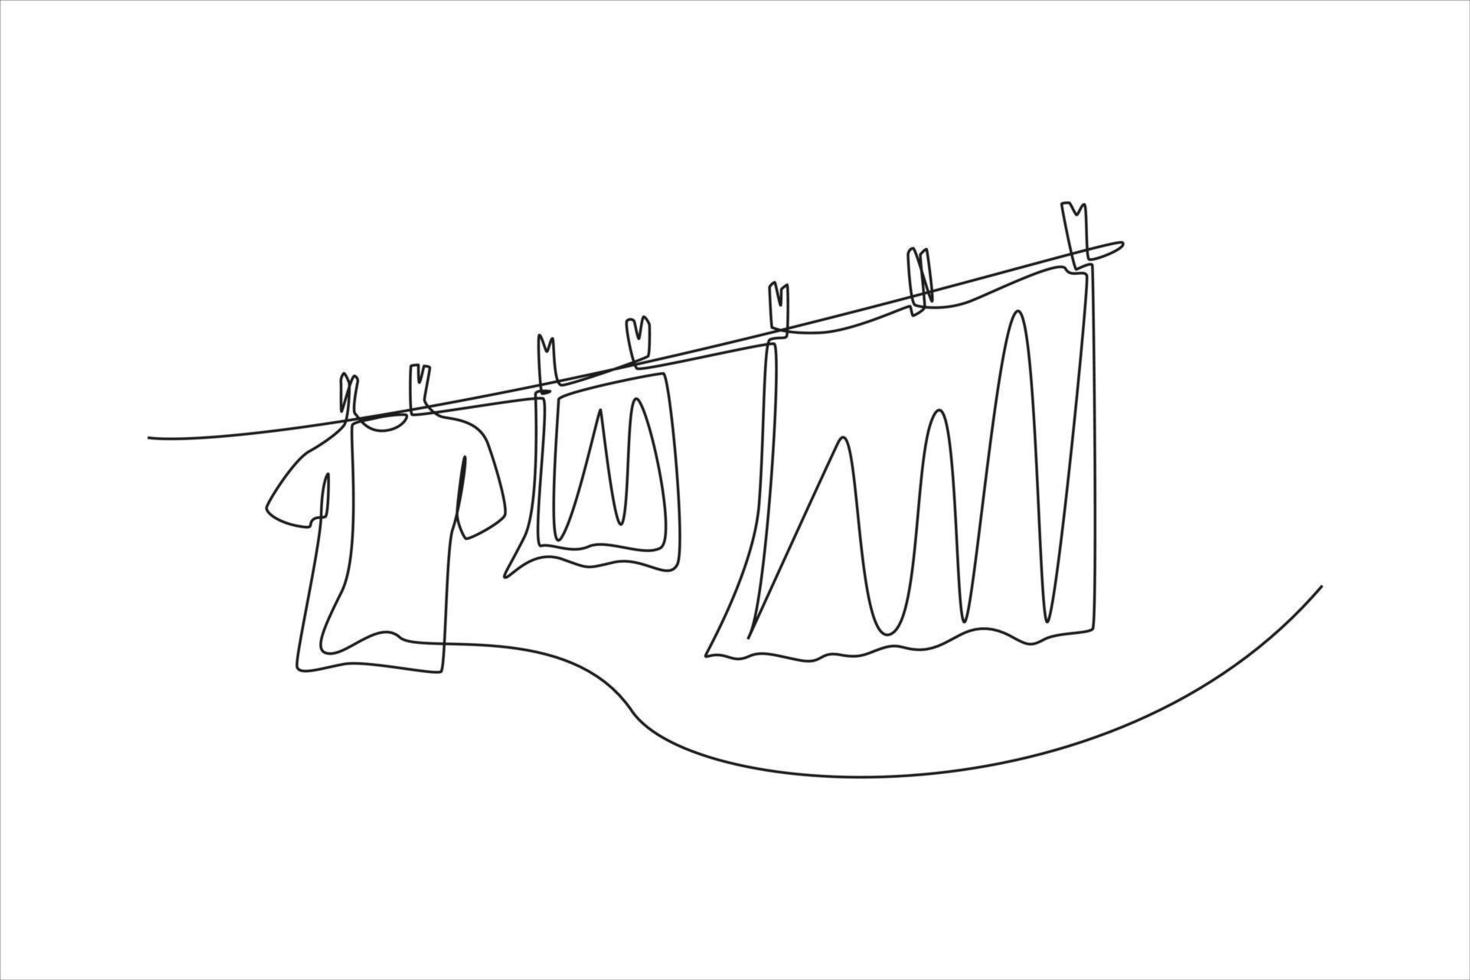 kontinuierliche eine Linie, die saubere Kleidung zeichnet, die an einem Seil hängt. Wäscheservice-Konzept. einzeiliges zeichnen design vektorgrafik illustration. vektor